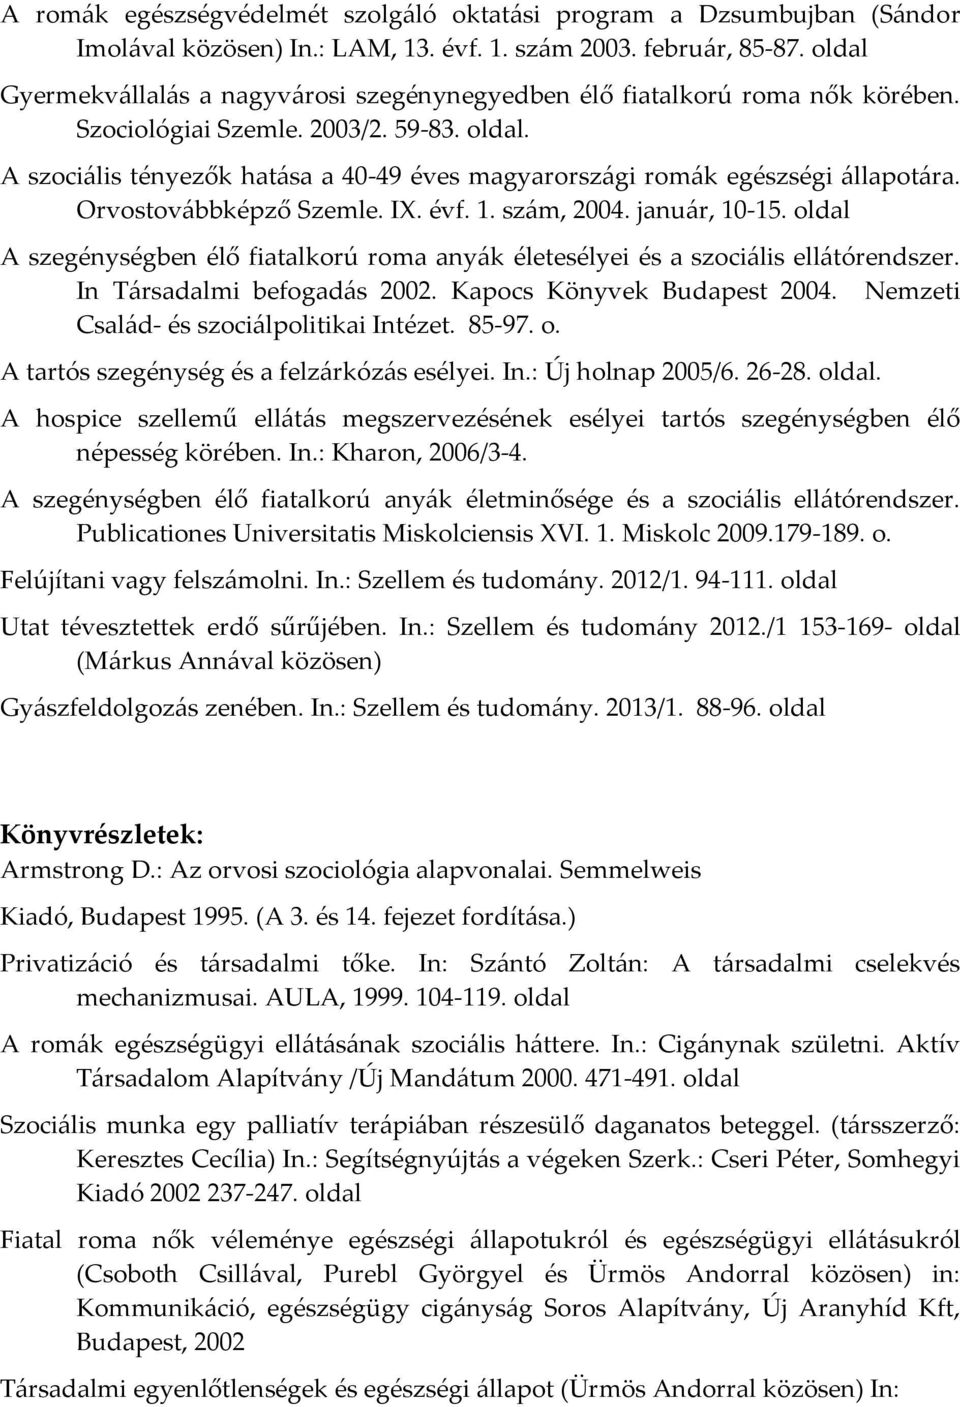 A szociális tényezők hatása a 40-49 éves magyarországi romák egészségi állapotára. Orvostovábbképző Szemle. IX. évf. 1. szám, 2004. január, 10-15.